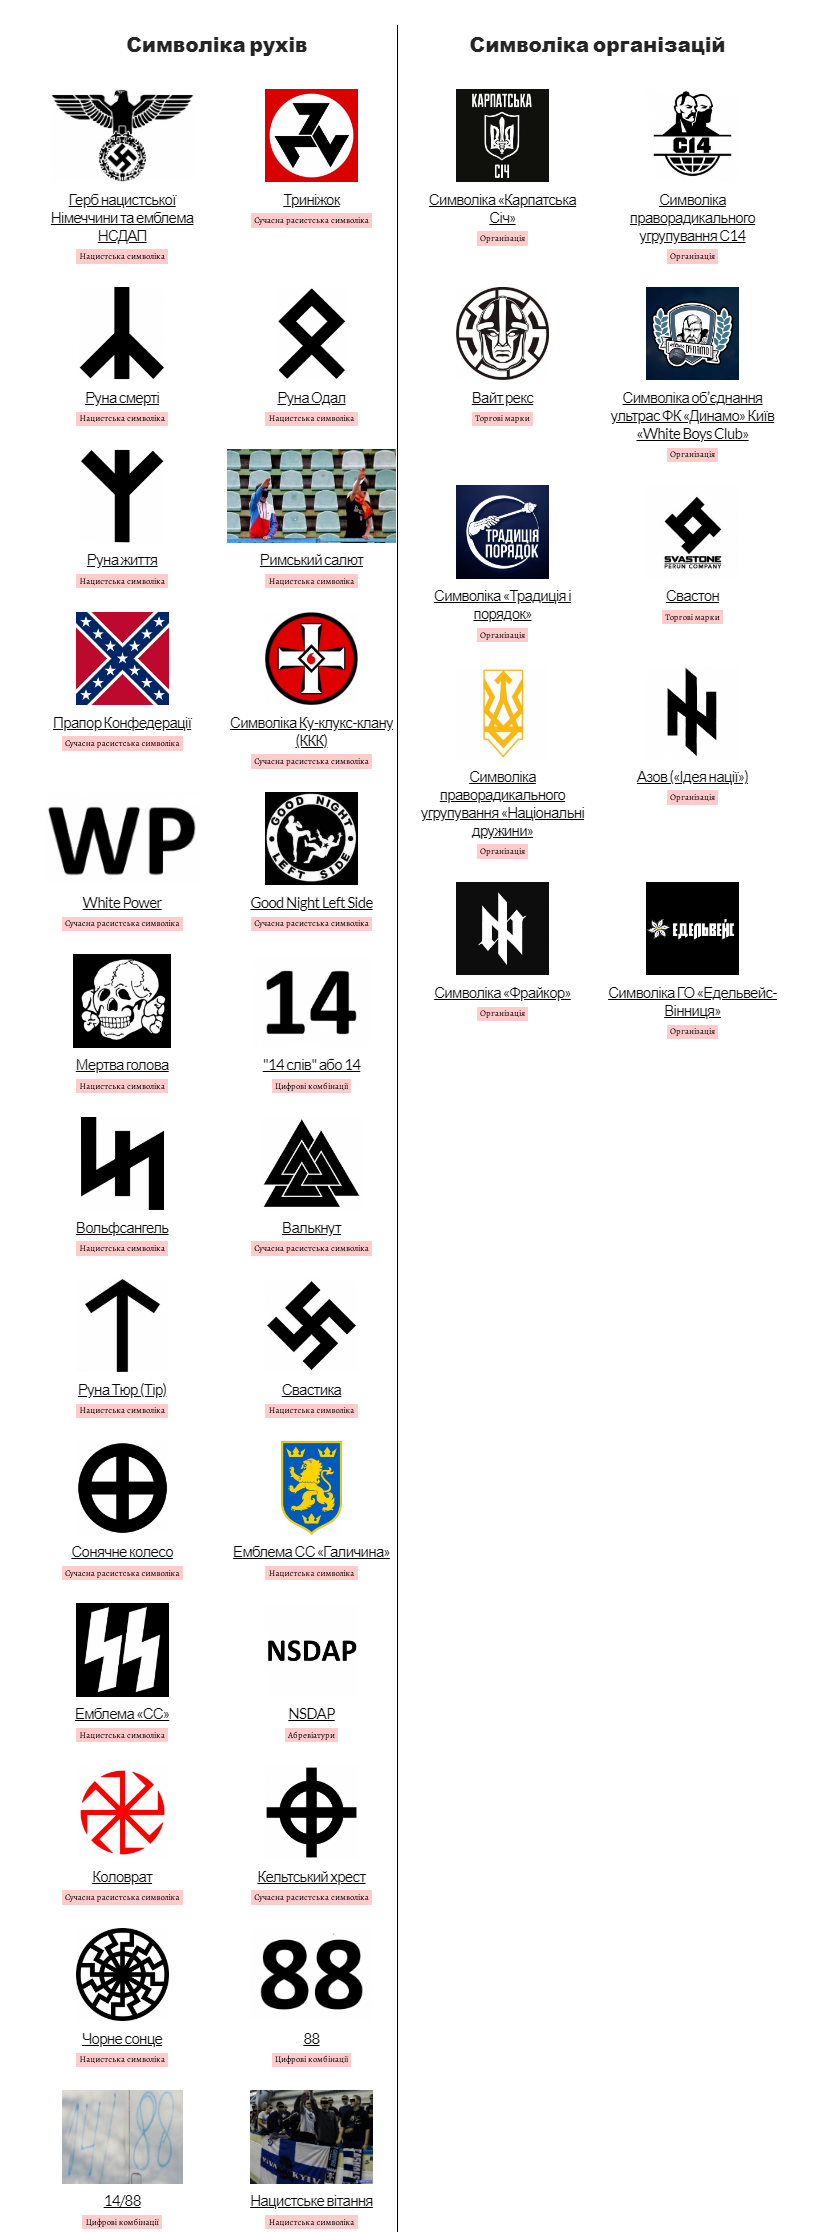 Свастика, эмблемы СС, символы Азова, Нацкорпуса, С14, Фрайкора: стала известна база символов ненависти в Украине - 1 - изображение